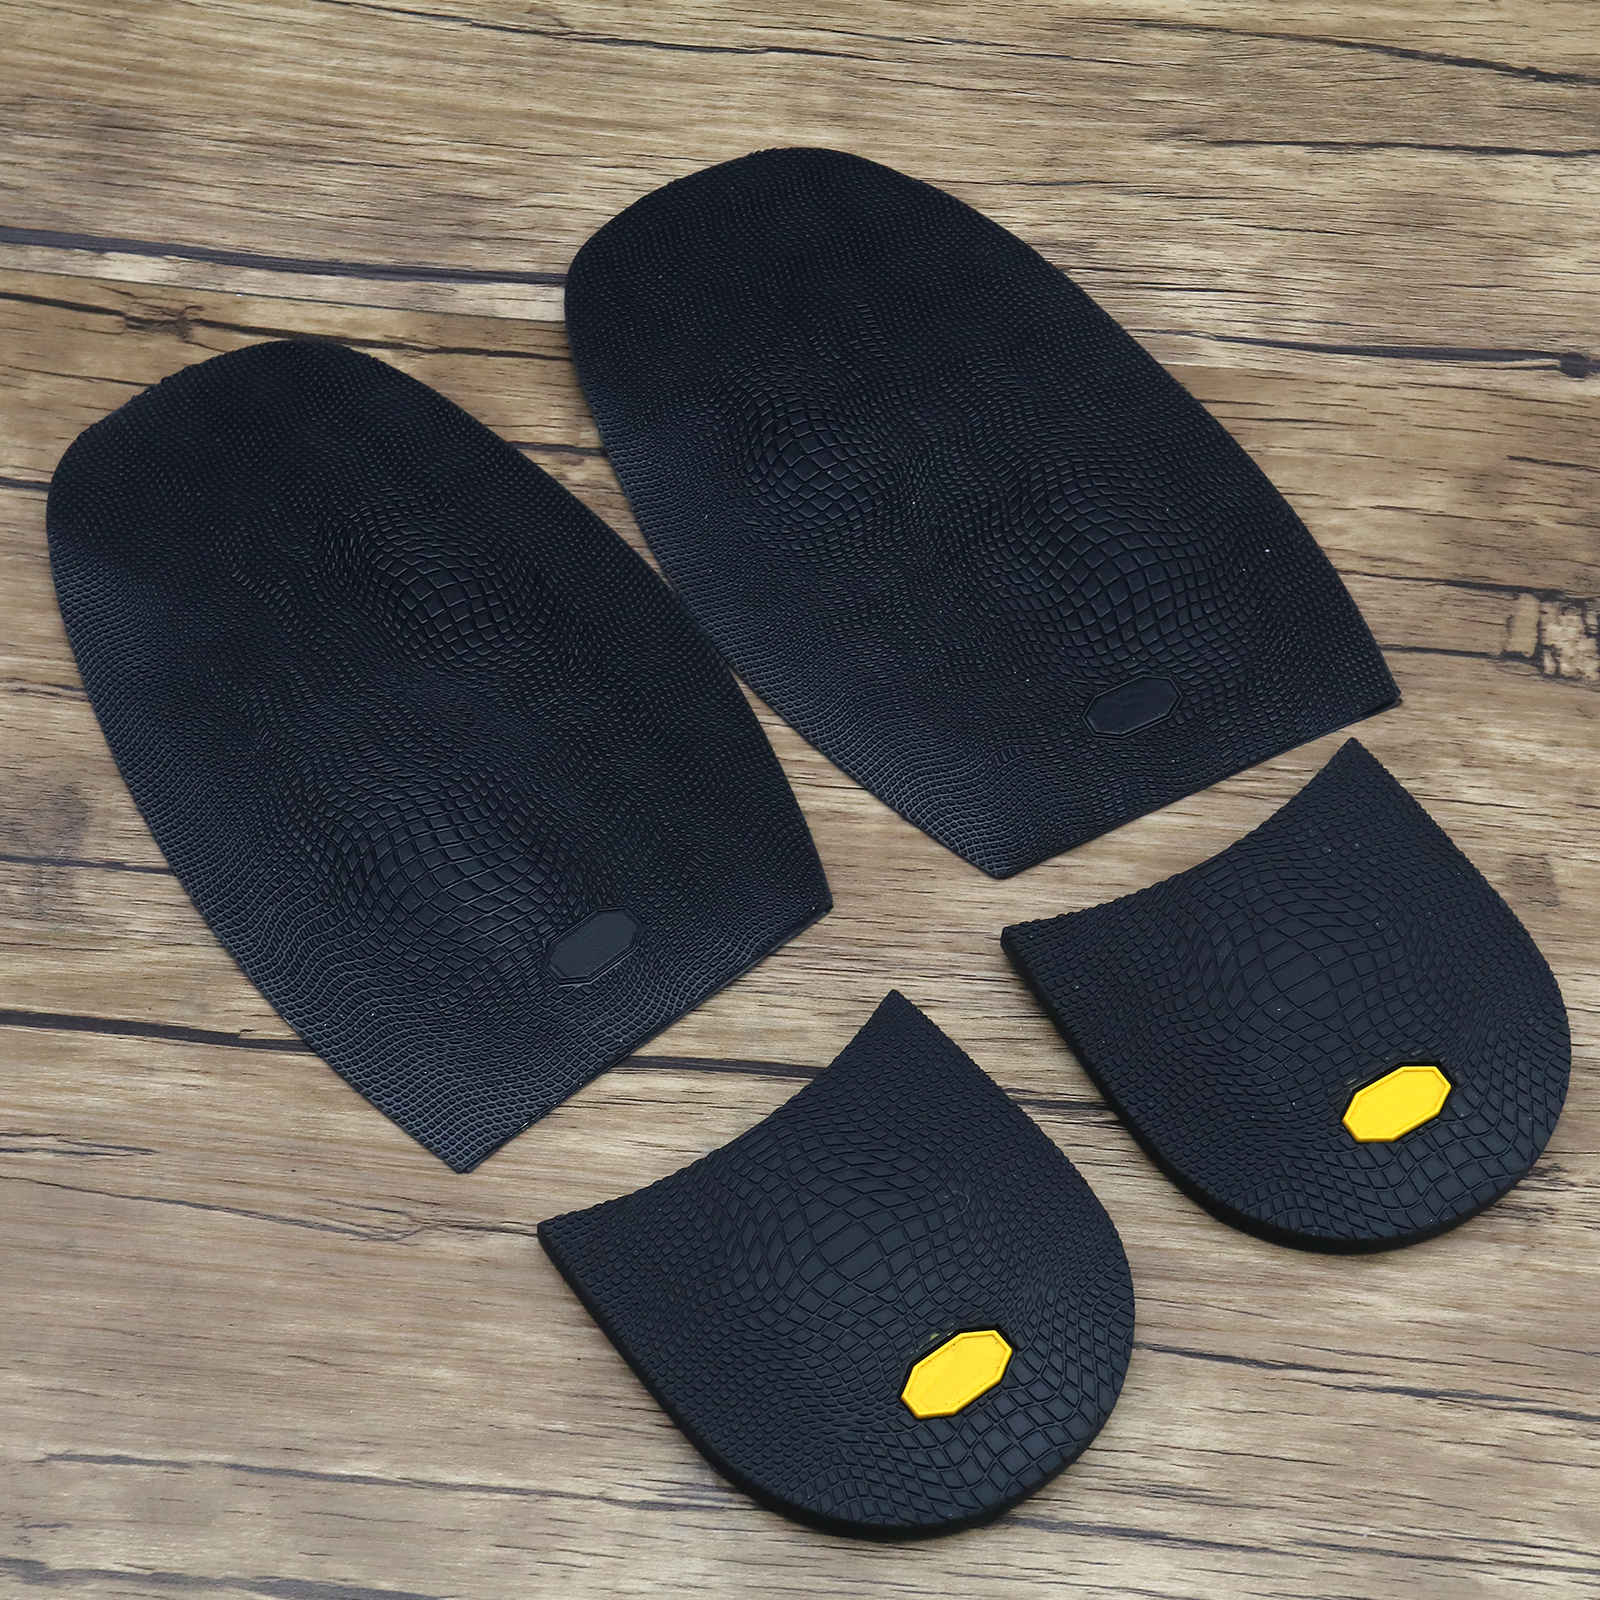 Unisex Rubber Soles Heels Pads Grip DIY Wear-resistant Shoe Repair ...